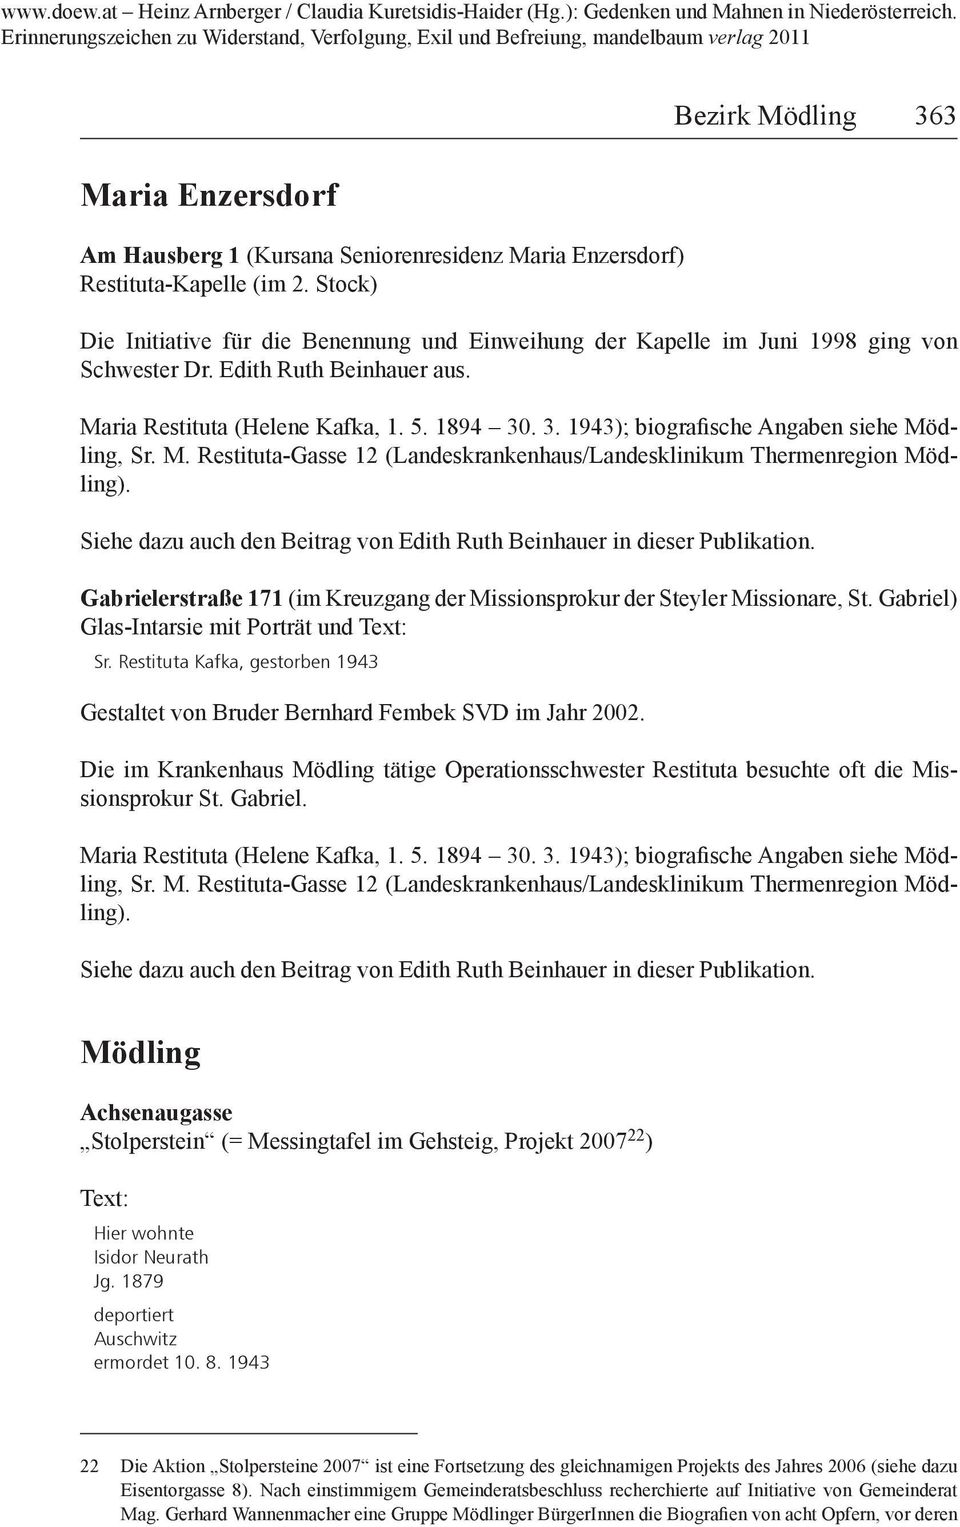 . 3. 1943); biografische Angaben siehe Mödling, Sr. M. Restituta-Gasse 12 (Landeskrankenhaus/Landesklinikum Thermenregion Mödling).